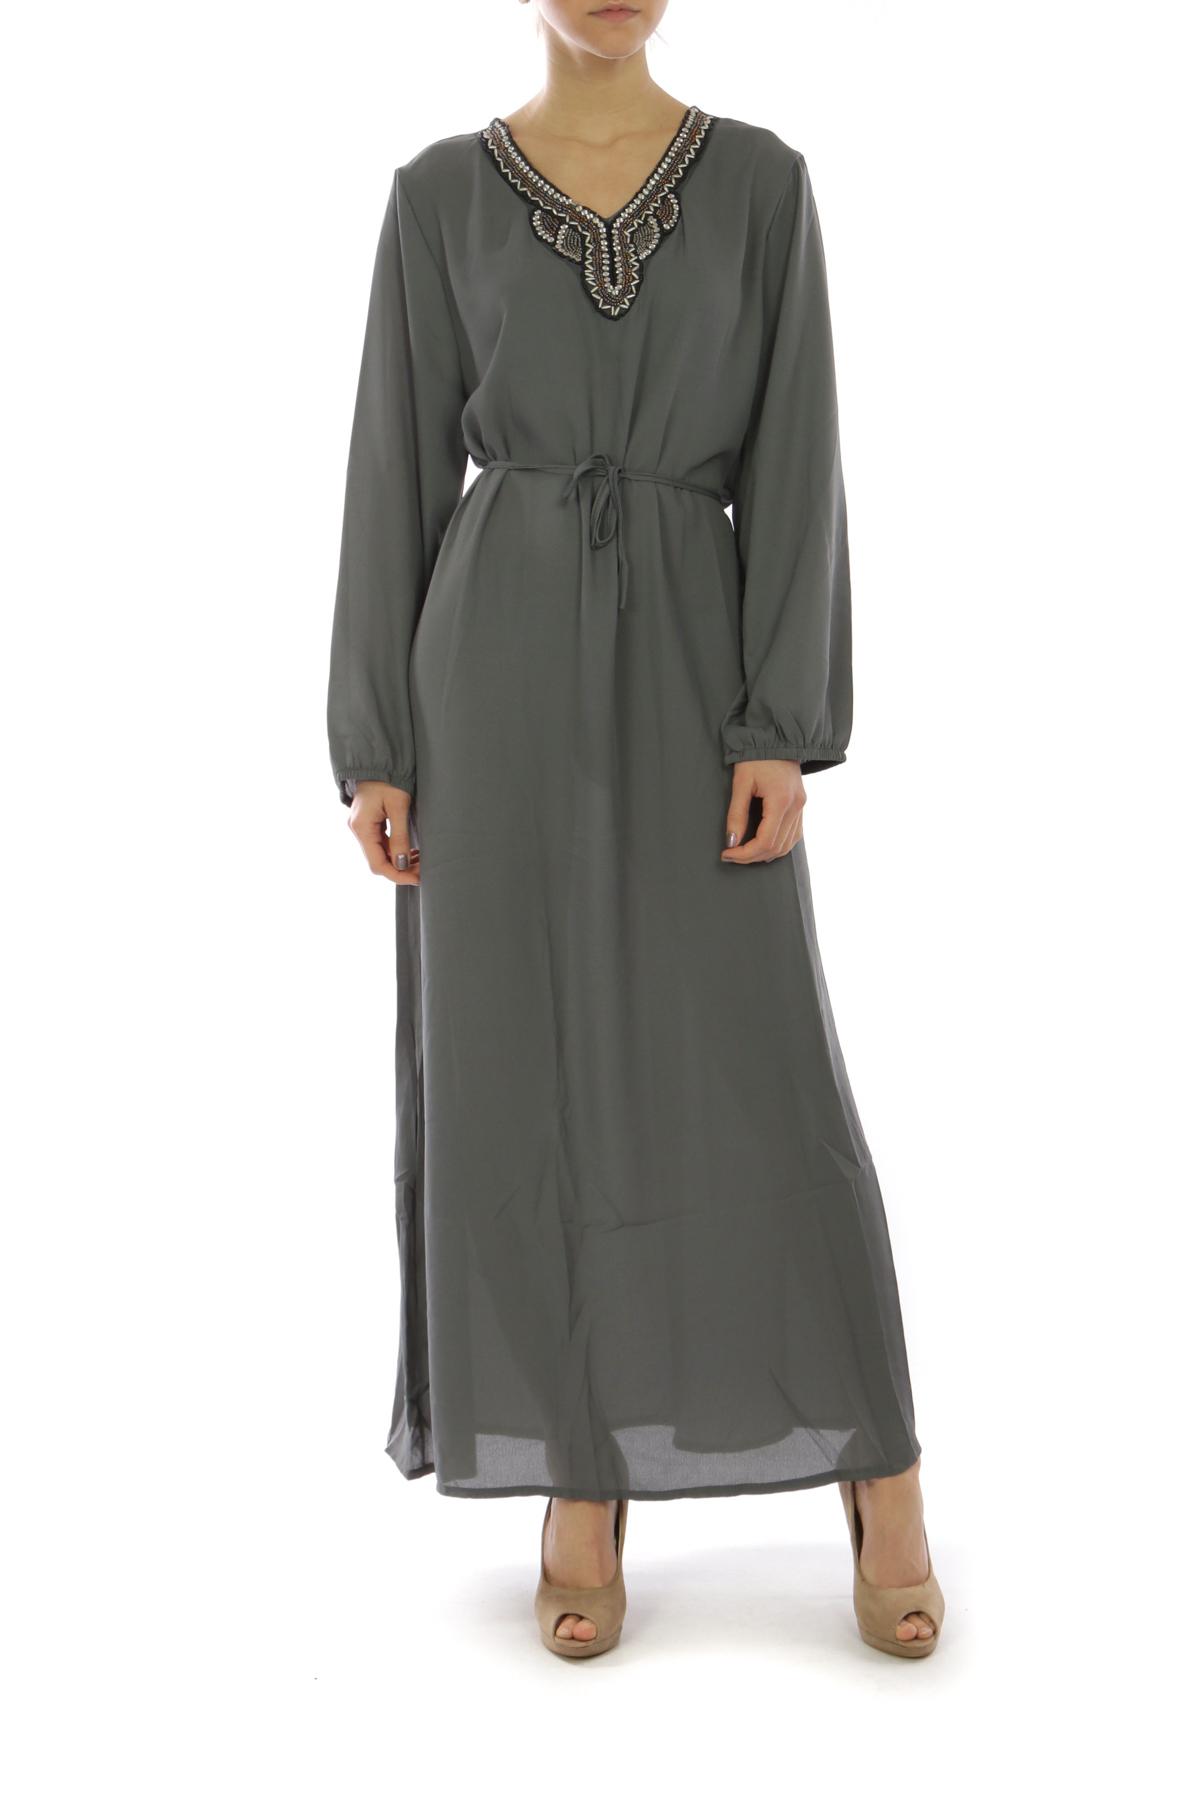 Robes longues Femme Couleurs mélangées Bigliuli S9025 #c Efashion Paris